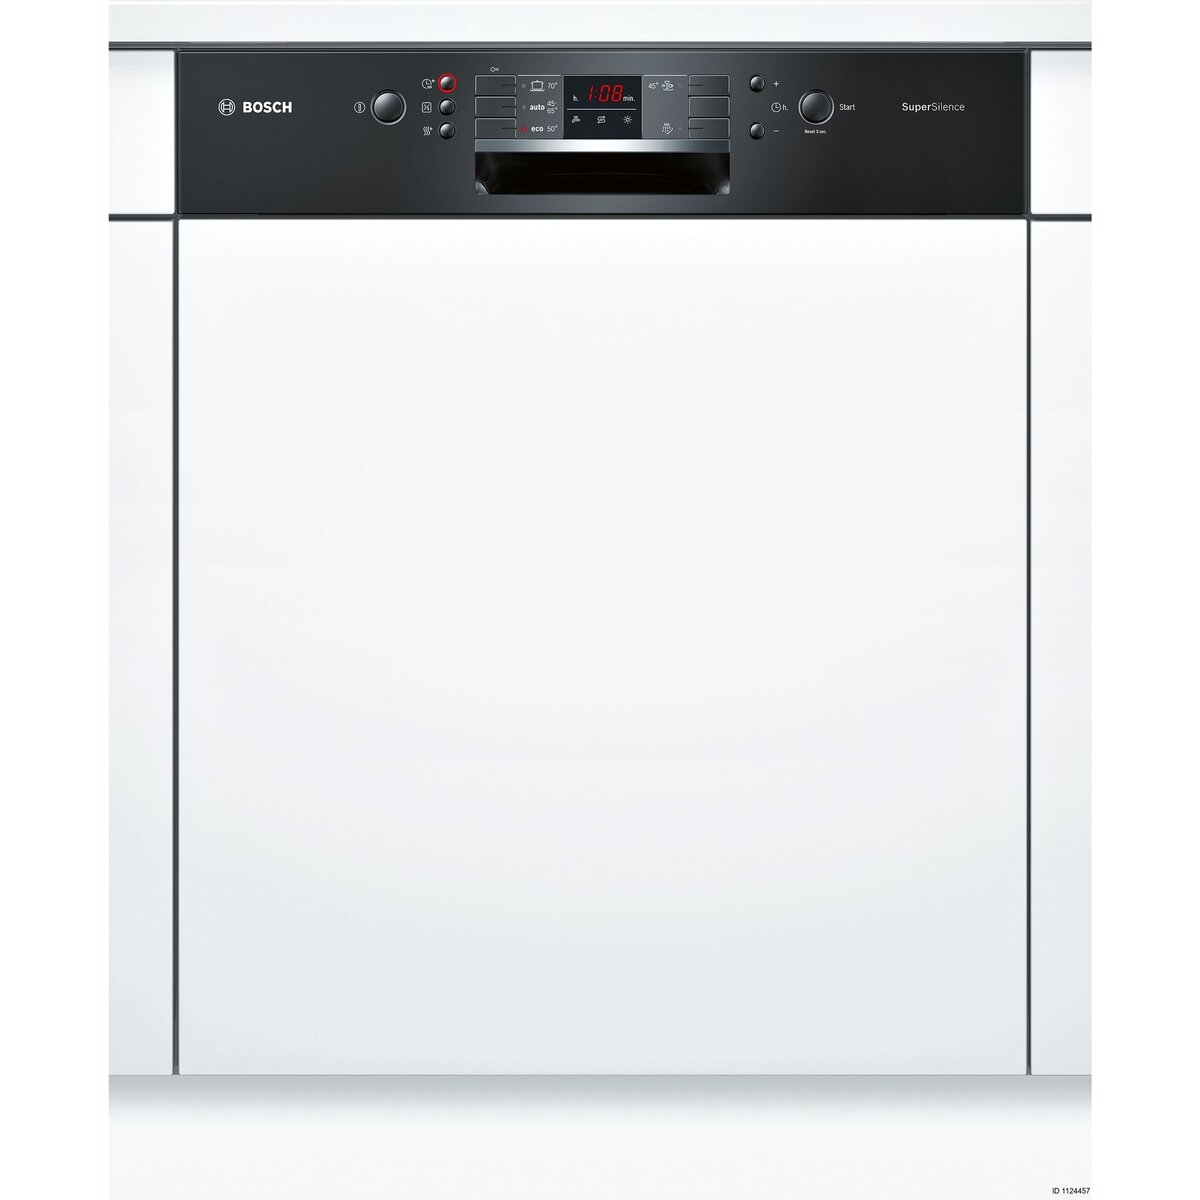 BOSCH Lave-vaisselle full encastrable SMI53L86EU, 12 couverts, 60 cm, 44 dB, 5 programmes